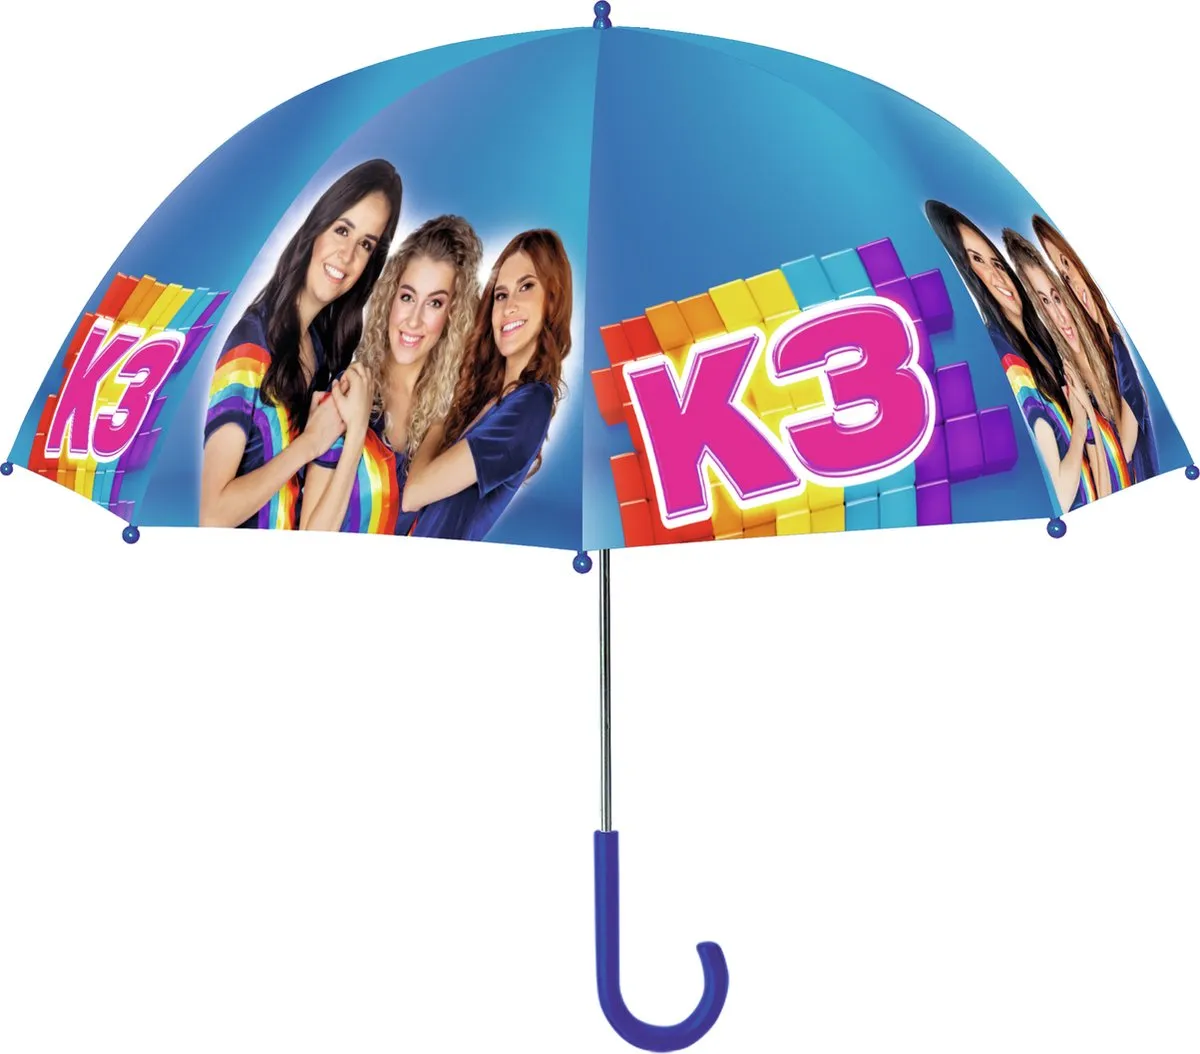 K3 Paraplu - Donkerblauwe regenboog paraplu speelgoed